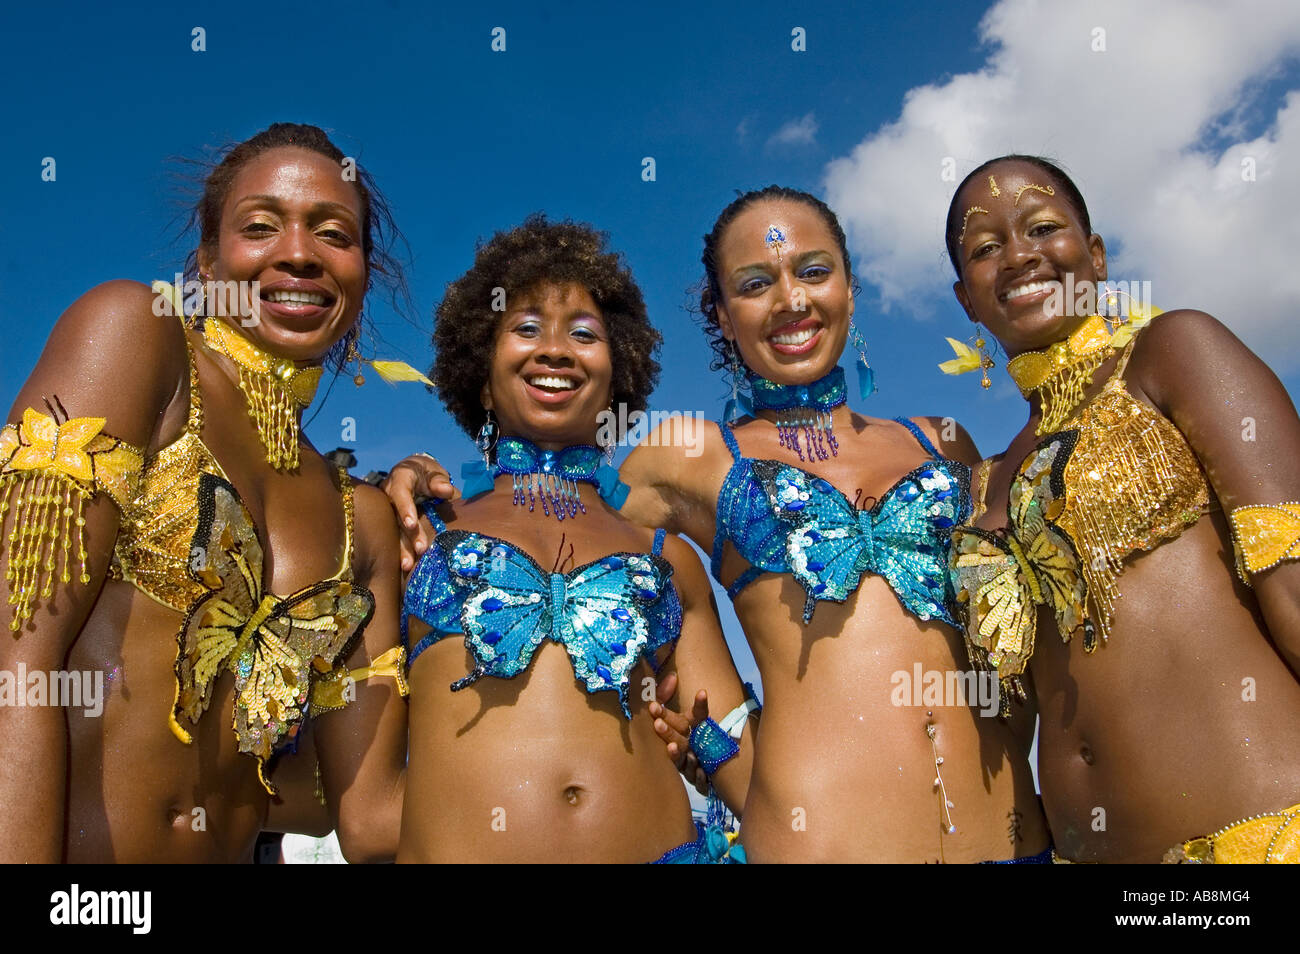 West Indies Port Of Spain Trinidad Karneval Nahaufnahme Tänzer auf der Mainstage in bunten Kostümen zu feiern. Stockfoto